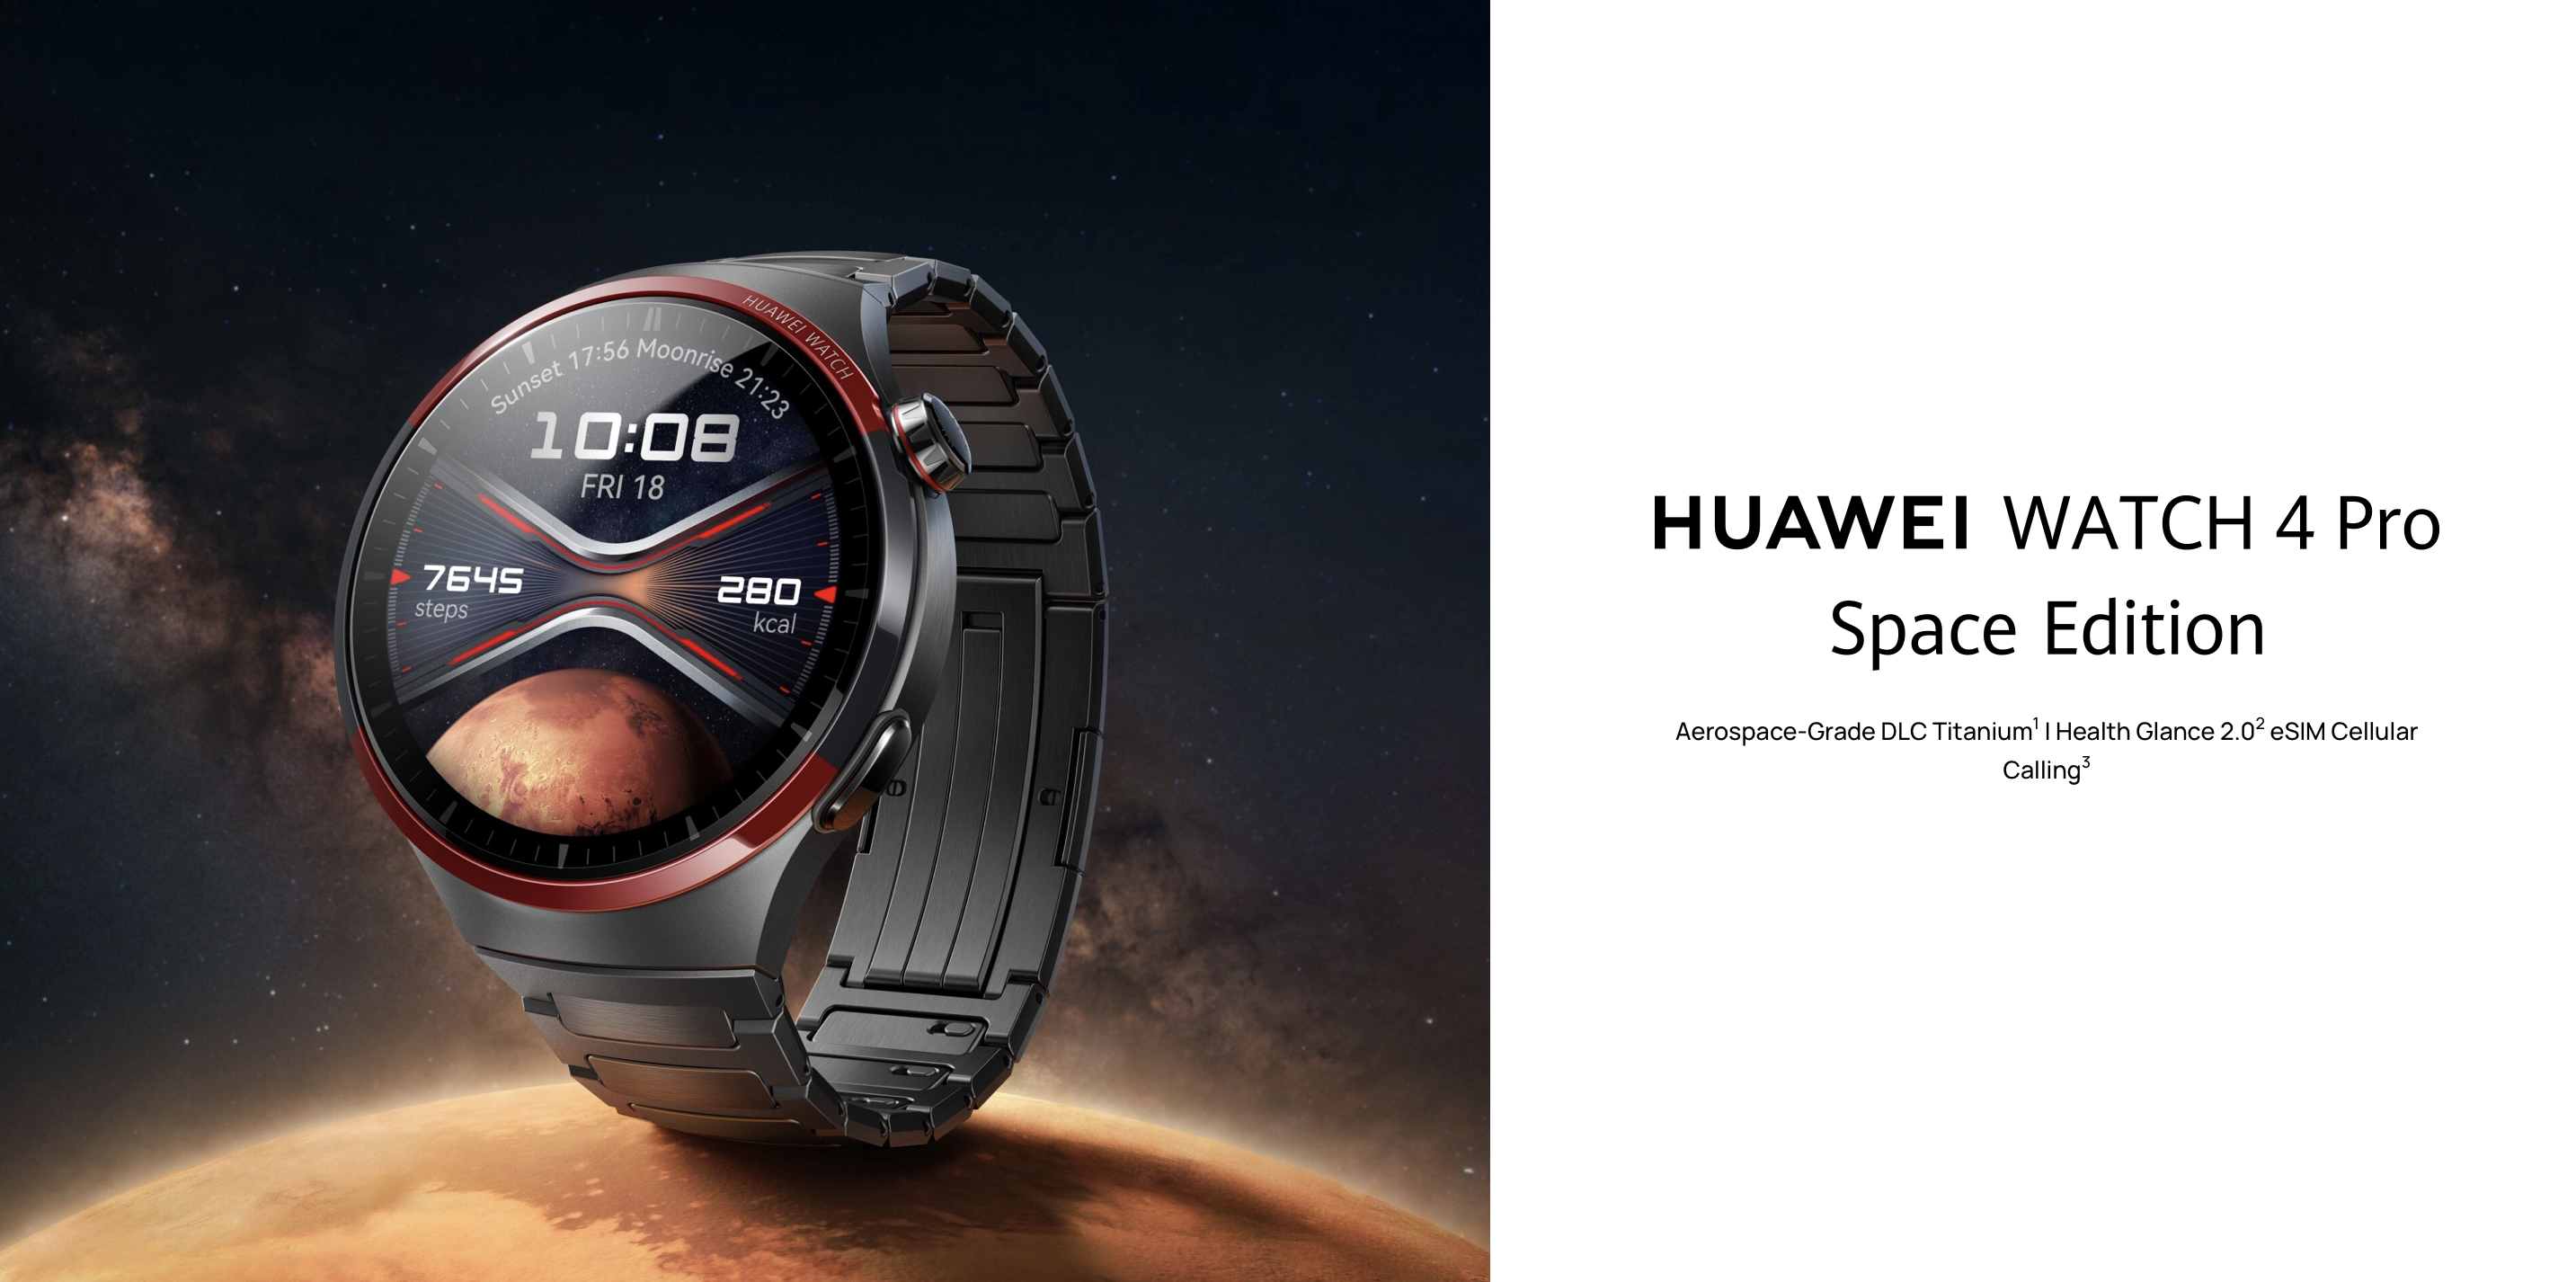 Huawei Watch 4 Pro Space Edition с титановым корпусом, сапфировым стеклом и ценой 649 дебютировали на глобальном рынке